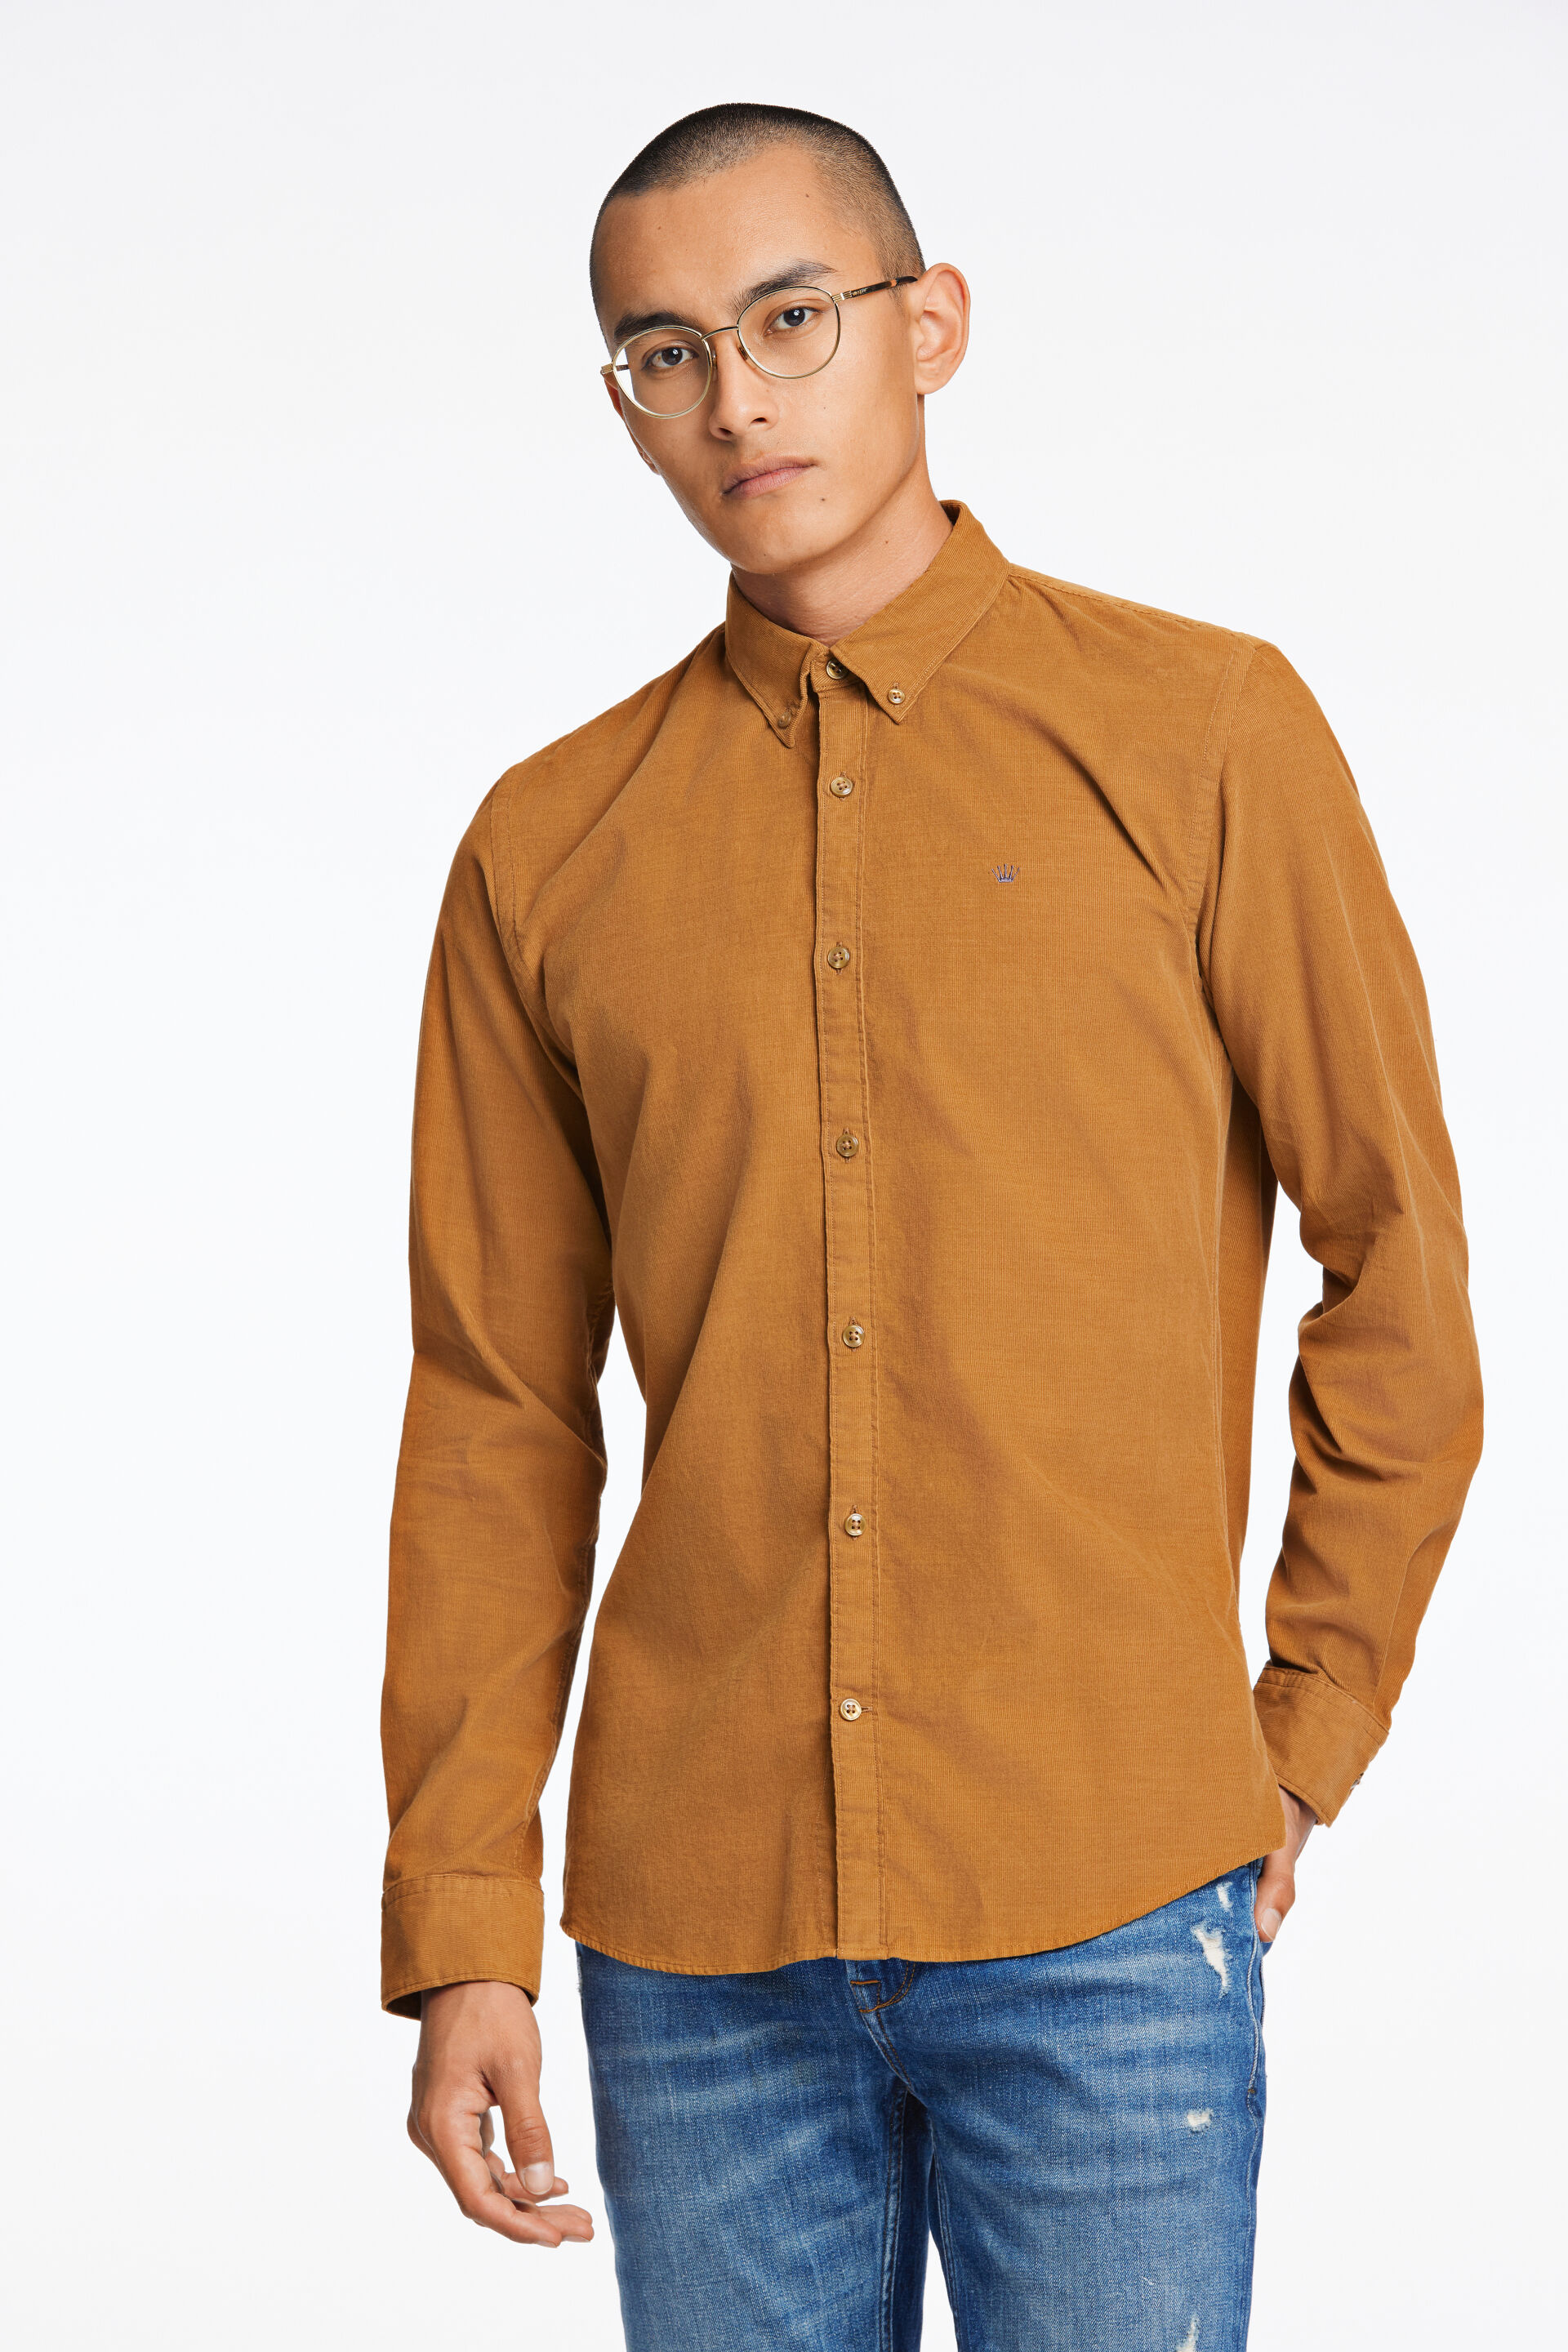 Fløjlsskjorte Fløjlsskjorte Brun 60-205016